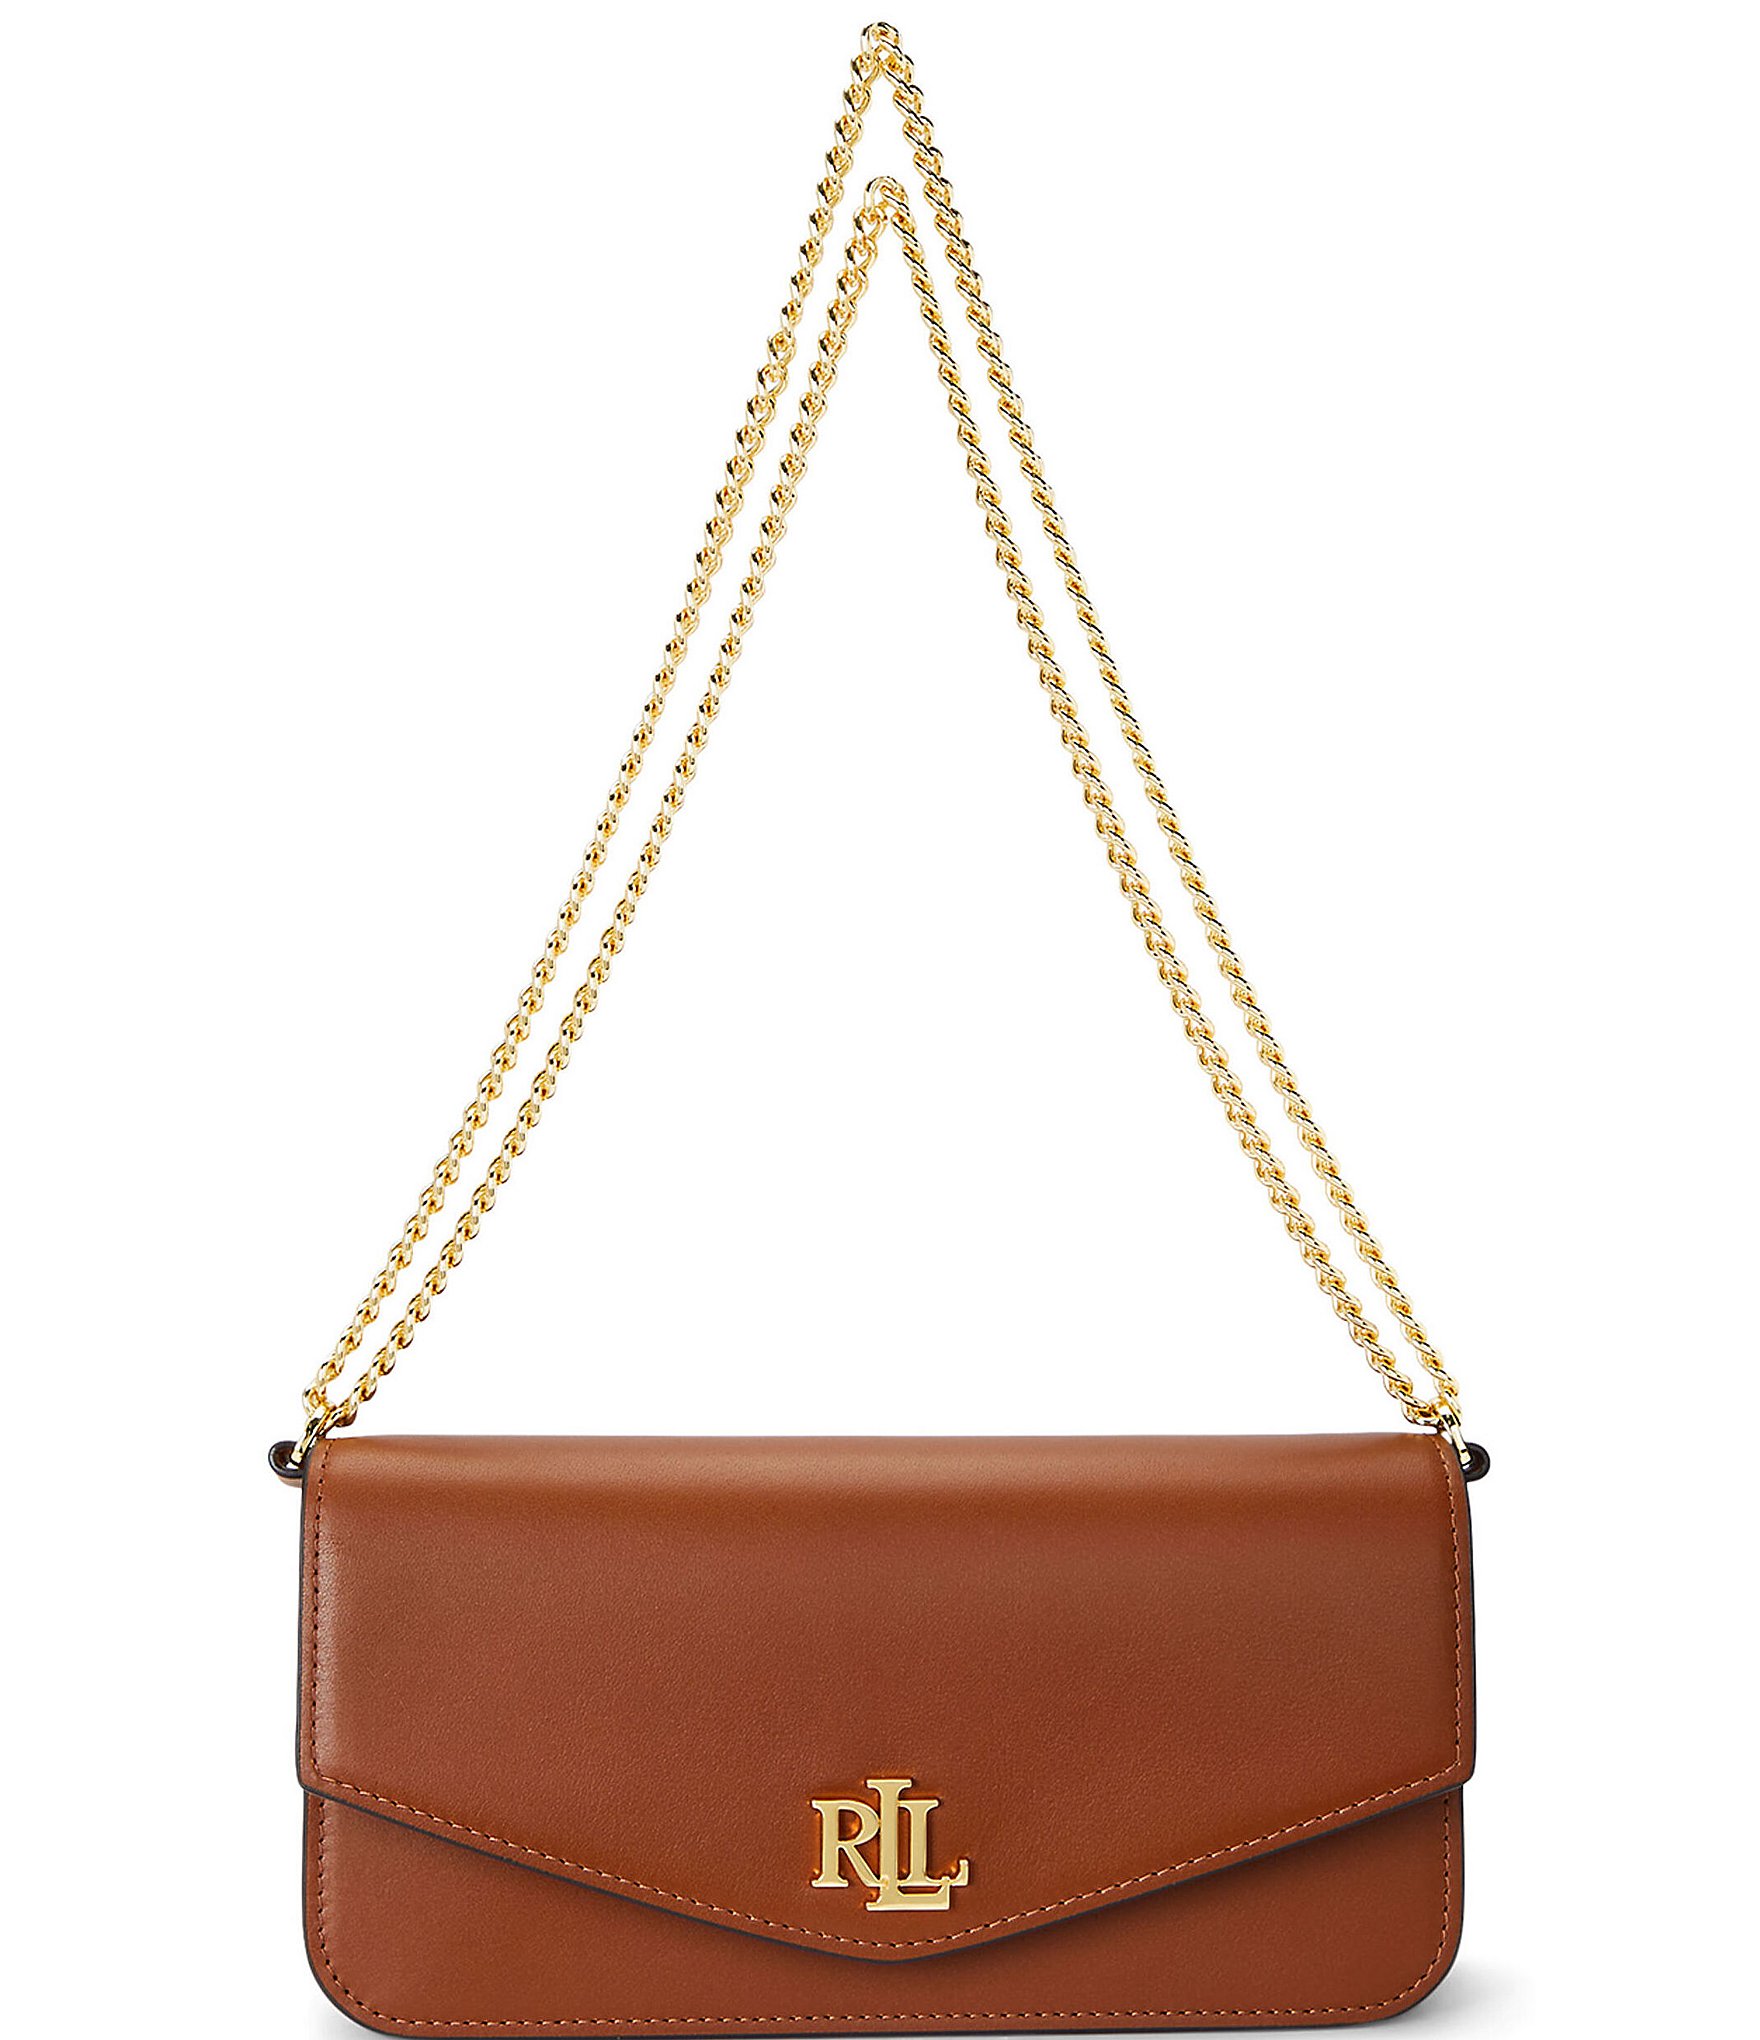 Ralph lauren | Handbags, Purses & Women's Bags for Sale | Gumtree